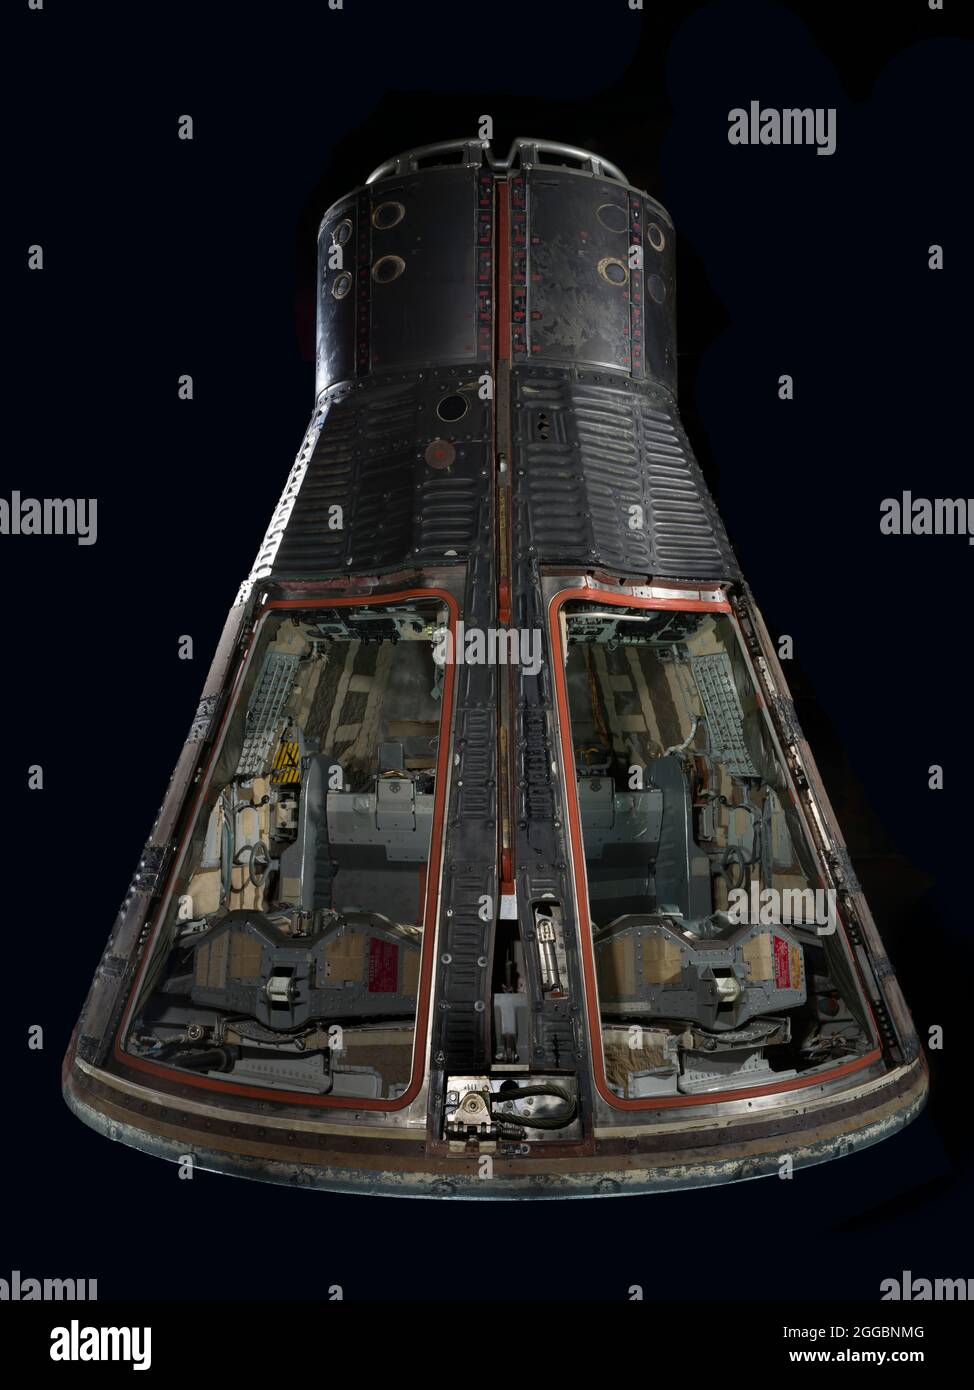 Gli astronauti Frank Borman e James Lovell furono lanciati in orbita a bordo di questa navicella spaziale, Gemini VII, il 4 dicembre 1965. La loro missione principale era quella di dimostrare che gli esseri umani potevano vivere in assenza di peso per 14 giorni, un record che sarebbe stato fino al 1970. Gemini VII è stato anche il veicolo target per Gemini VI-A, pilotato da Walter Schirra e Thomas Stafford, che ha realizzato il primo appuntamento spaziale del mondo il 15 dicembre. Questi due risultati sono stati passi cruciali sulla strada verso l’atterraggio dell’Apollo Moon. Questo modulo è l'unica parte di Gemini che è tornata sulla terra. Dietro lo scudo termico c'era un Foto Stock